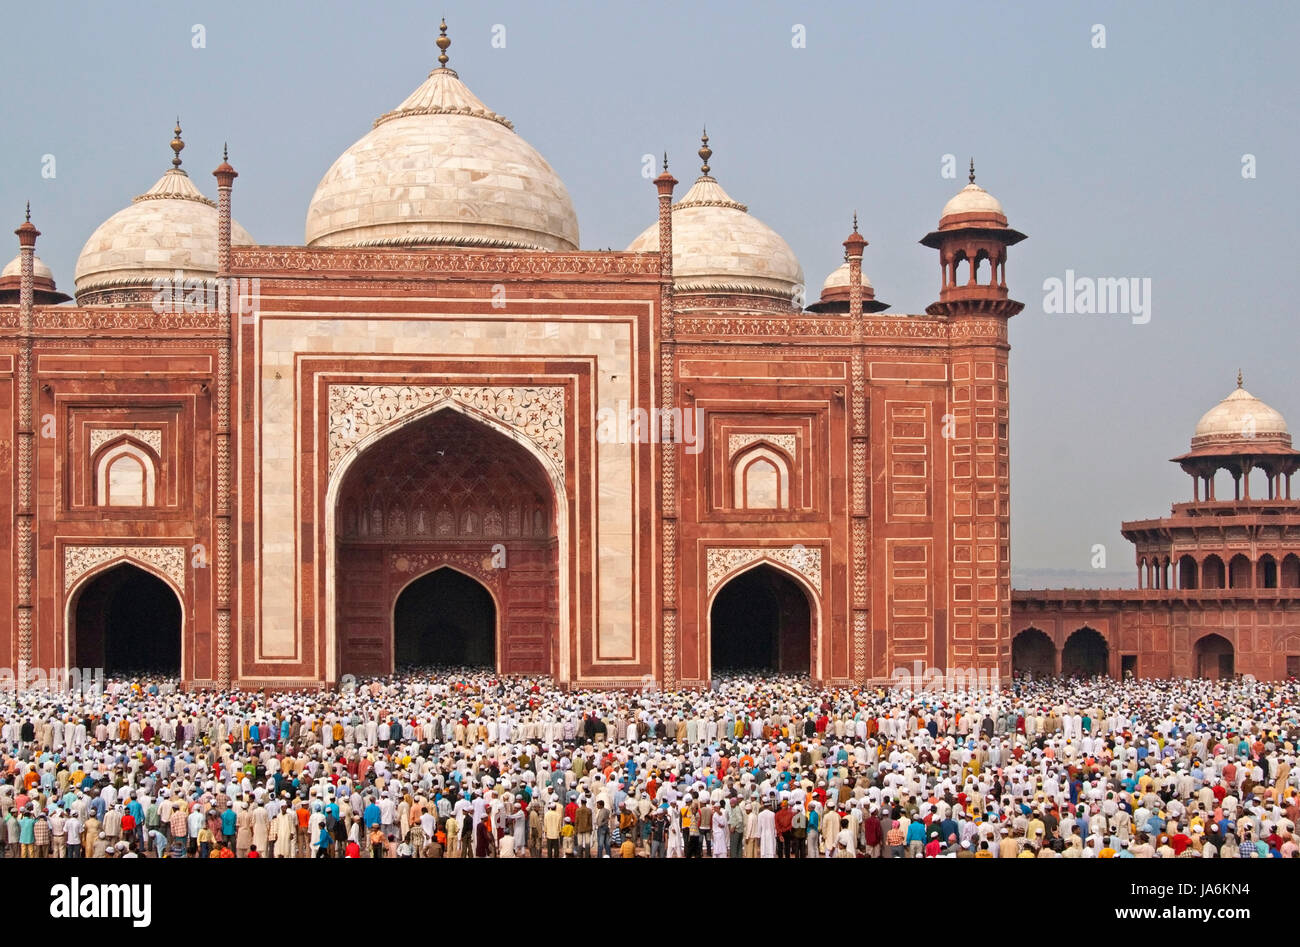 Des milliers de se rassembler devant la mosquée au Taj Mahal pour célébrer la fête musulmane de l'Aïd el-Fitr à Agra, Uttar Pradesh, Inde. Banque D'Images